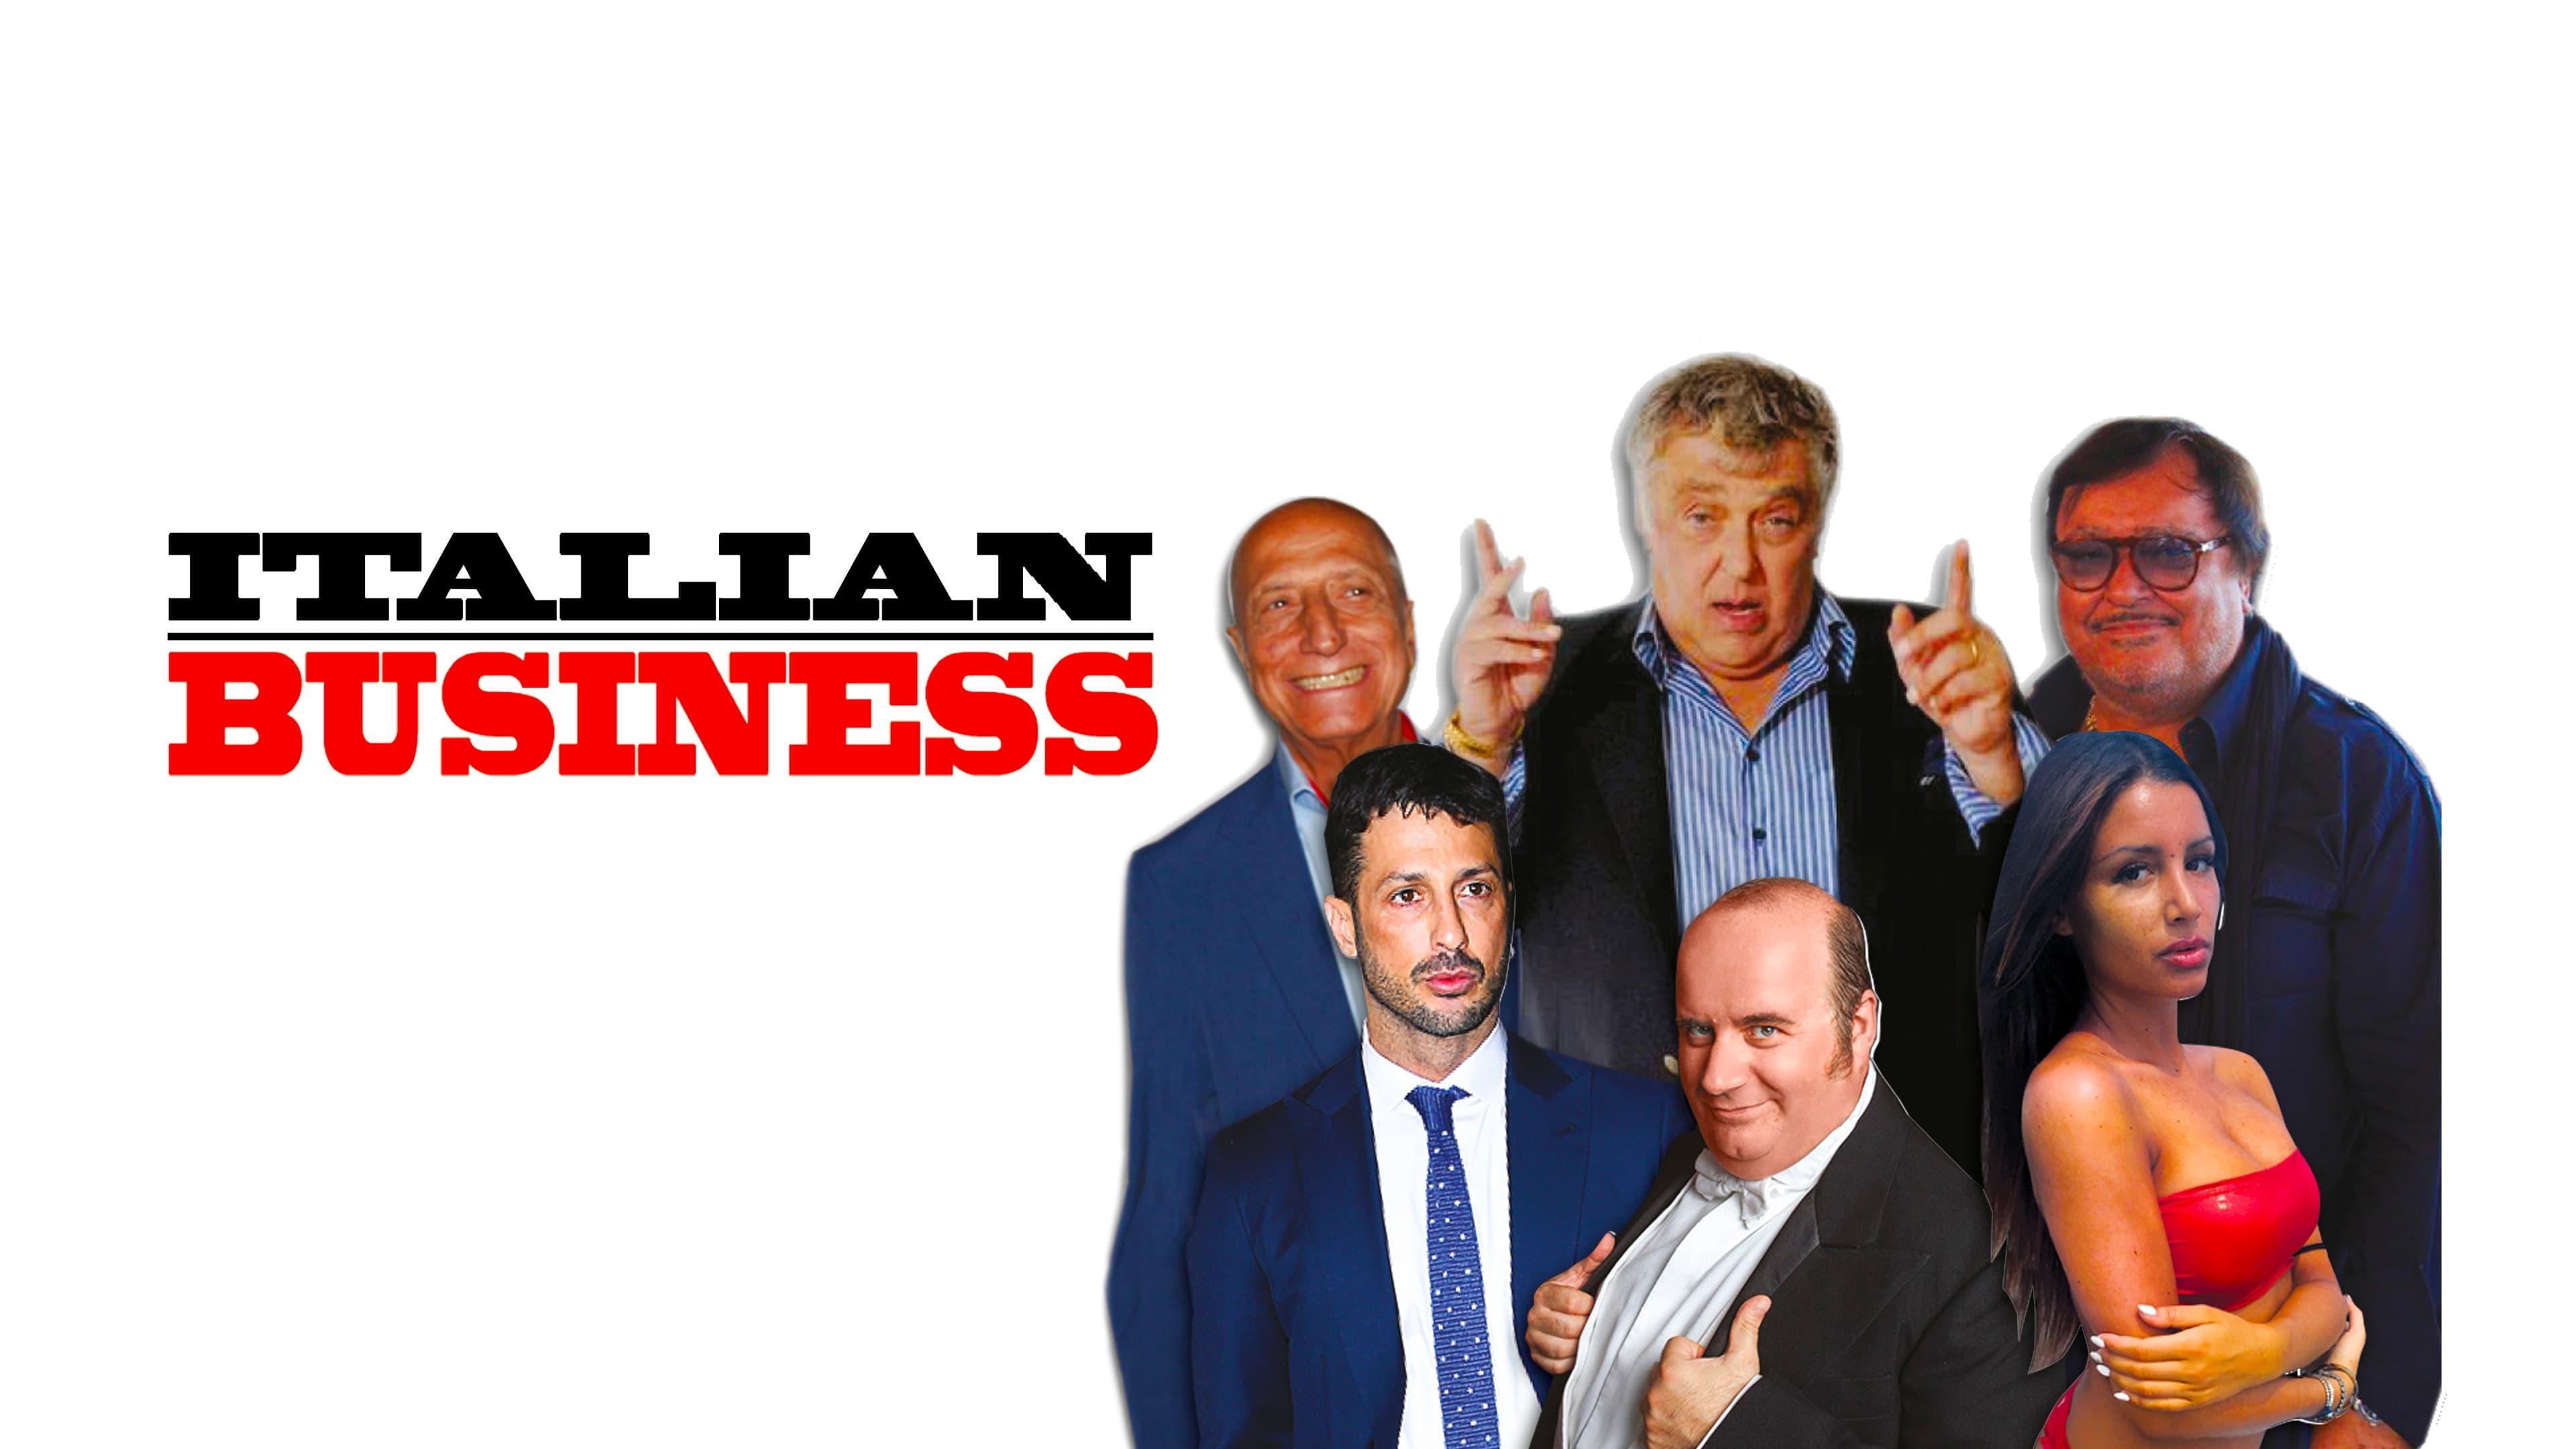 Italian Business backdrop